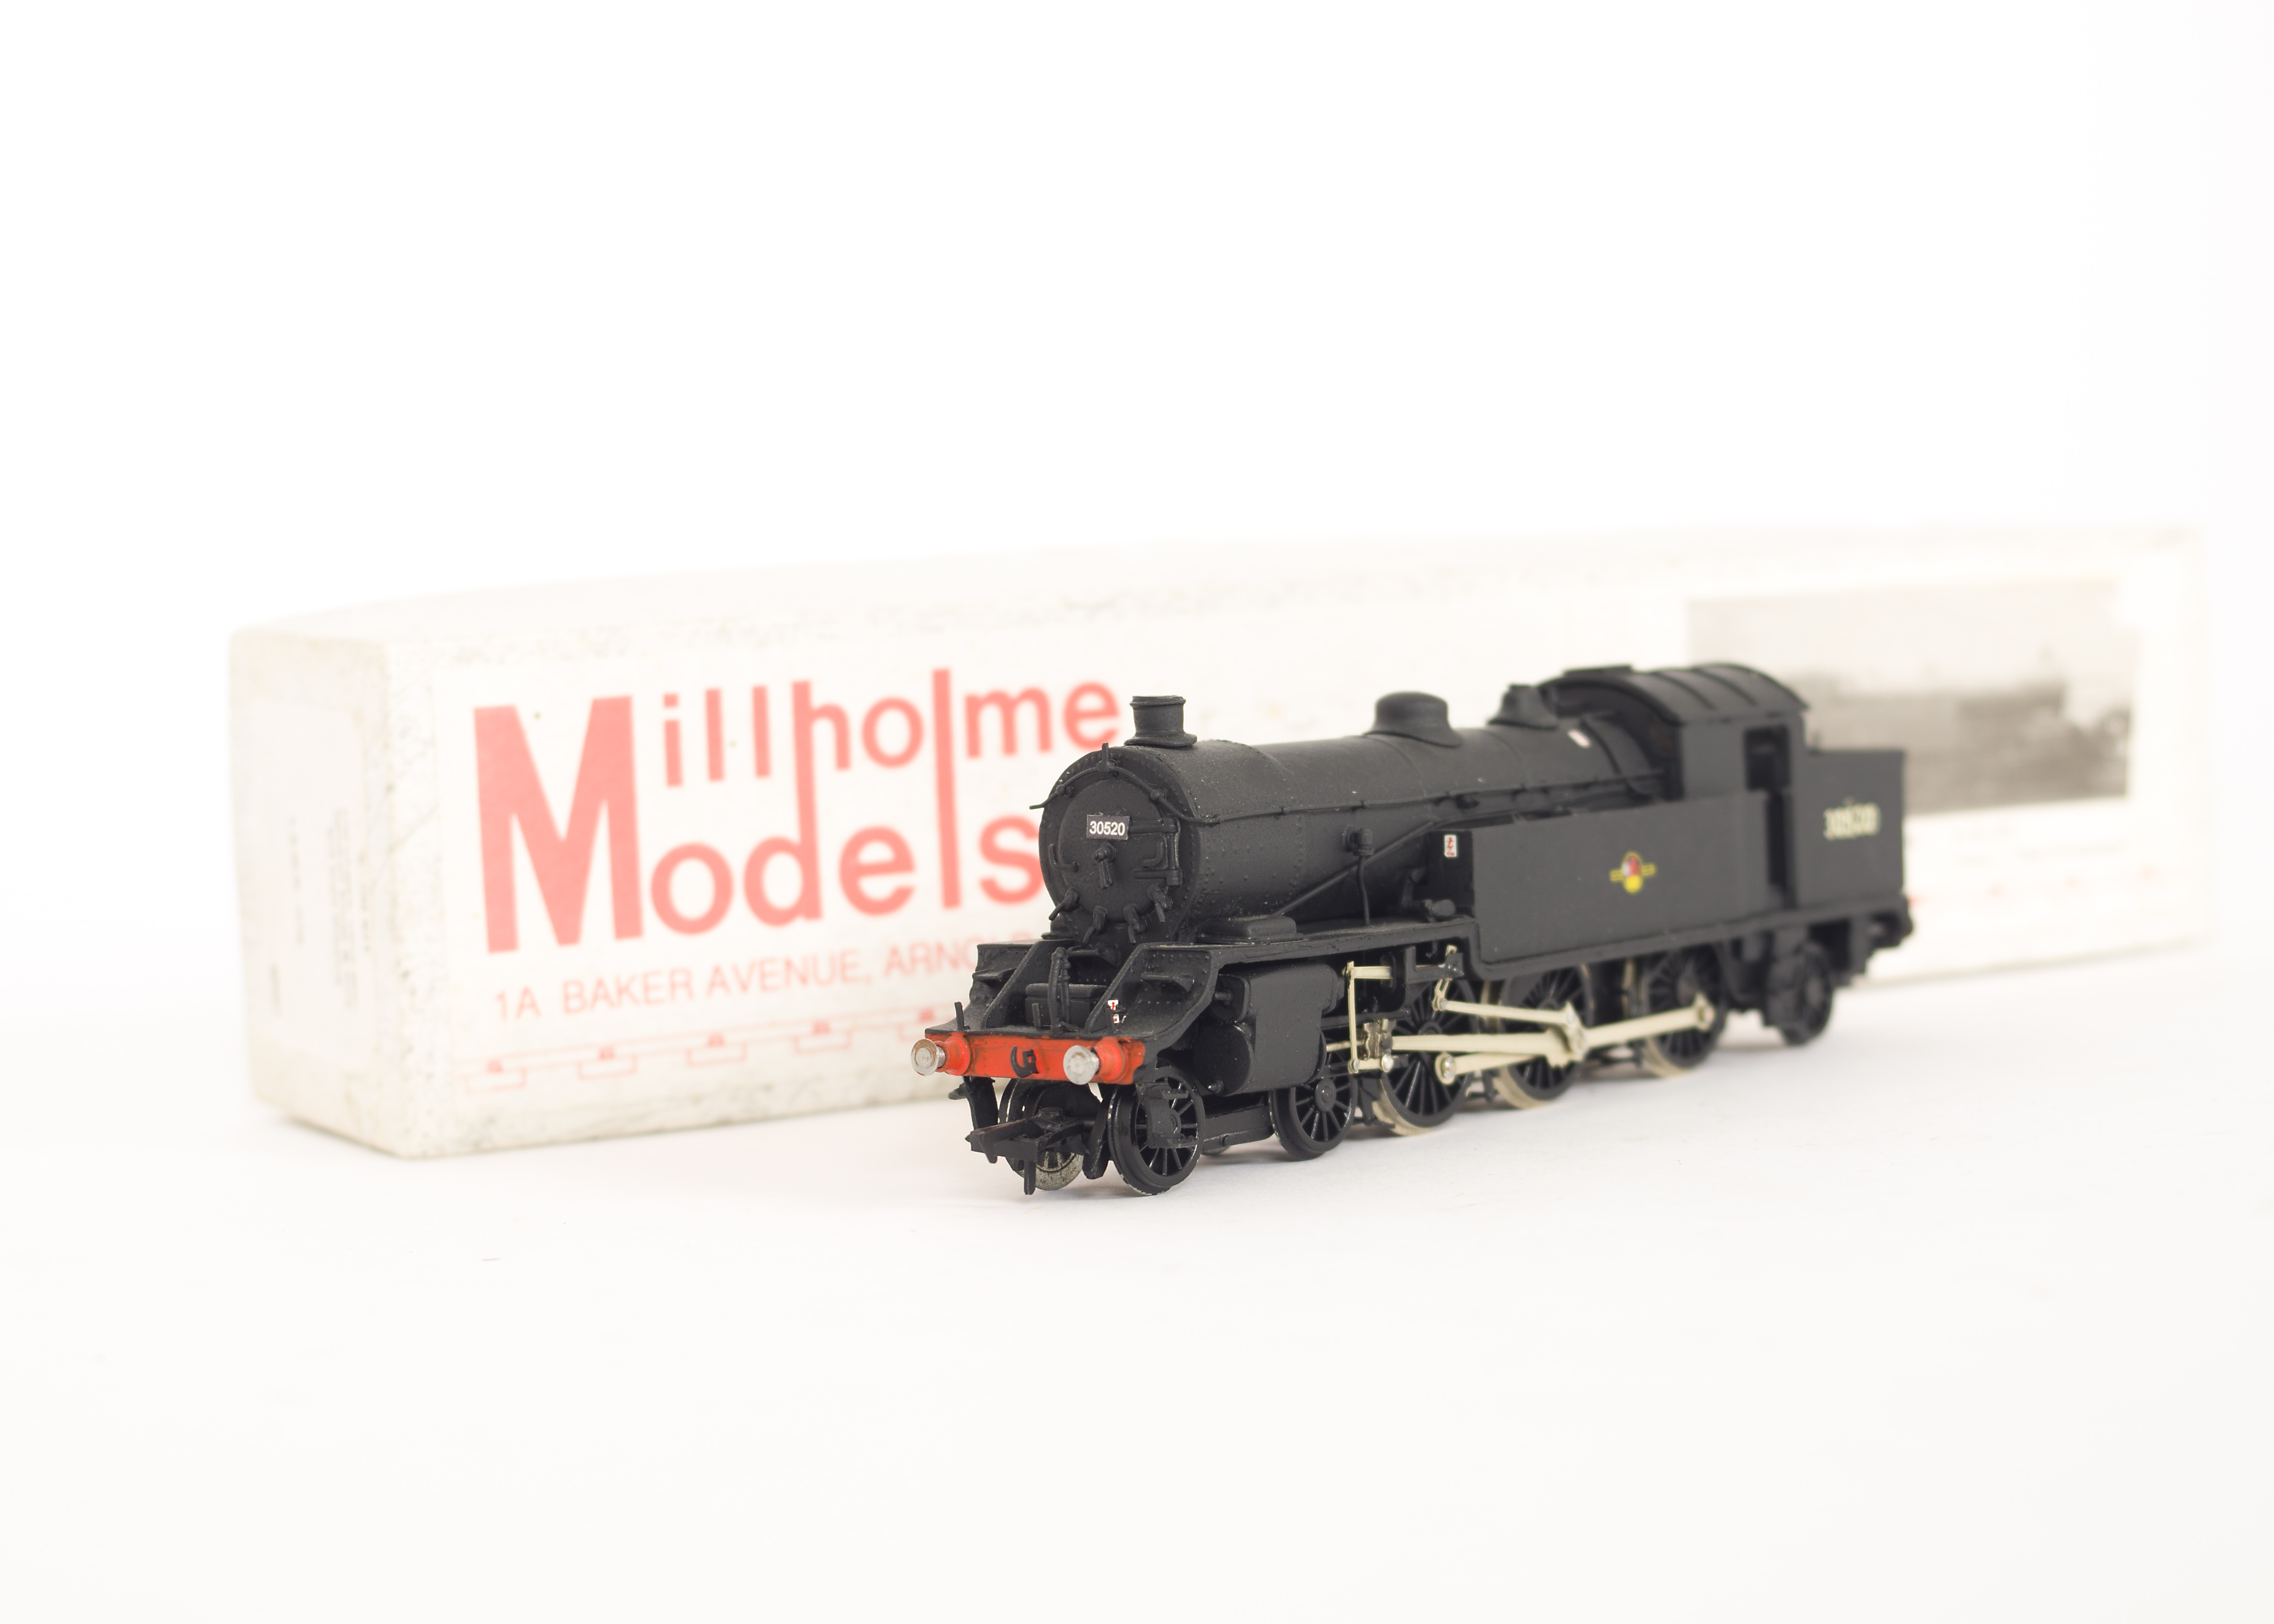 Millholmes Models 00 Gauge kitbuilt BR ex LSWR H16 4-6-2 Tank Locomotive, unlined black 30520, built